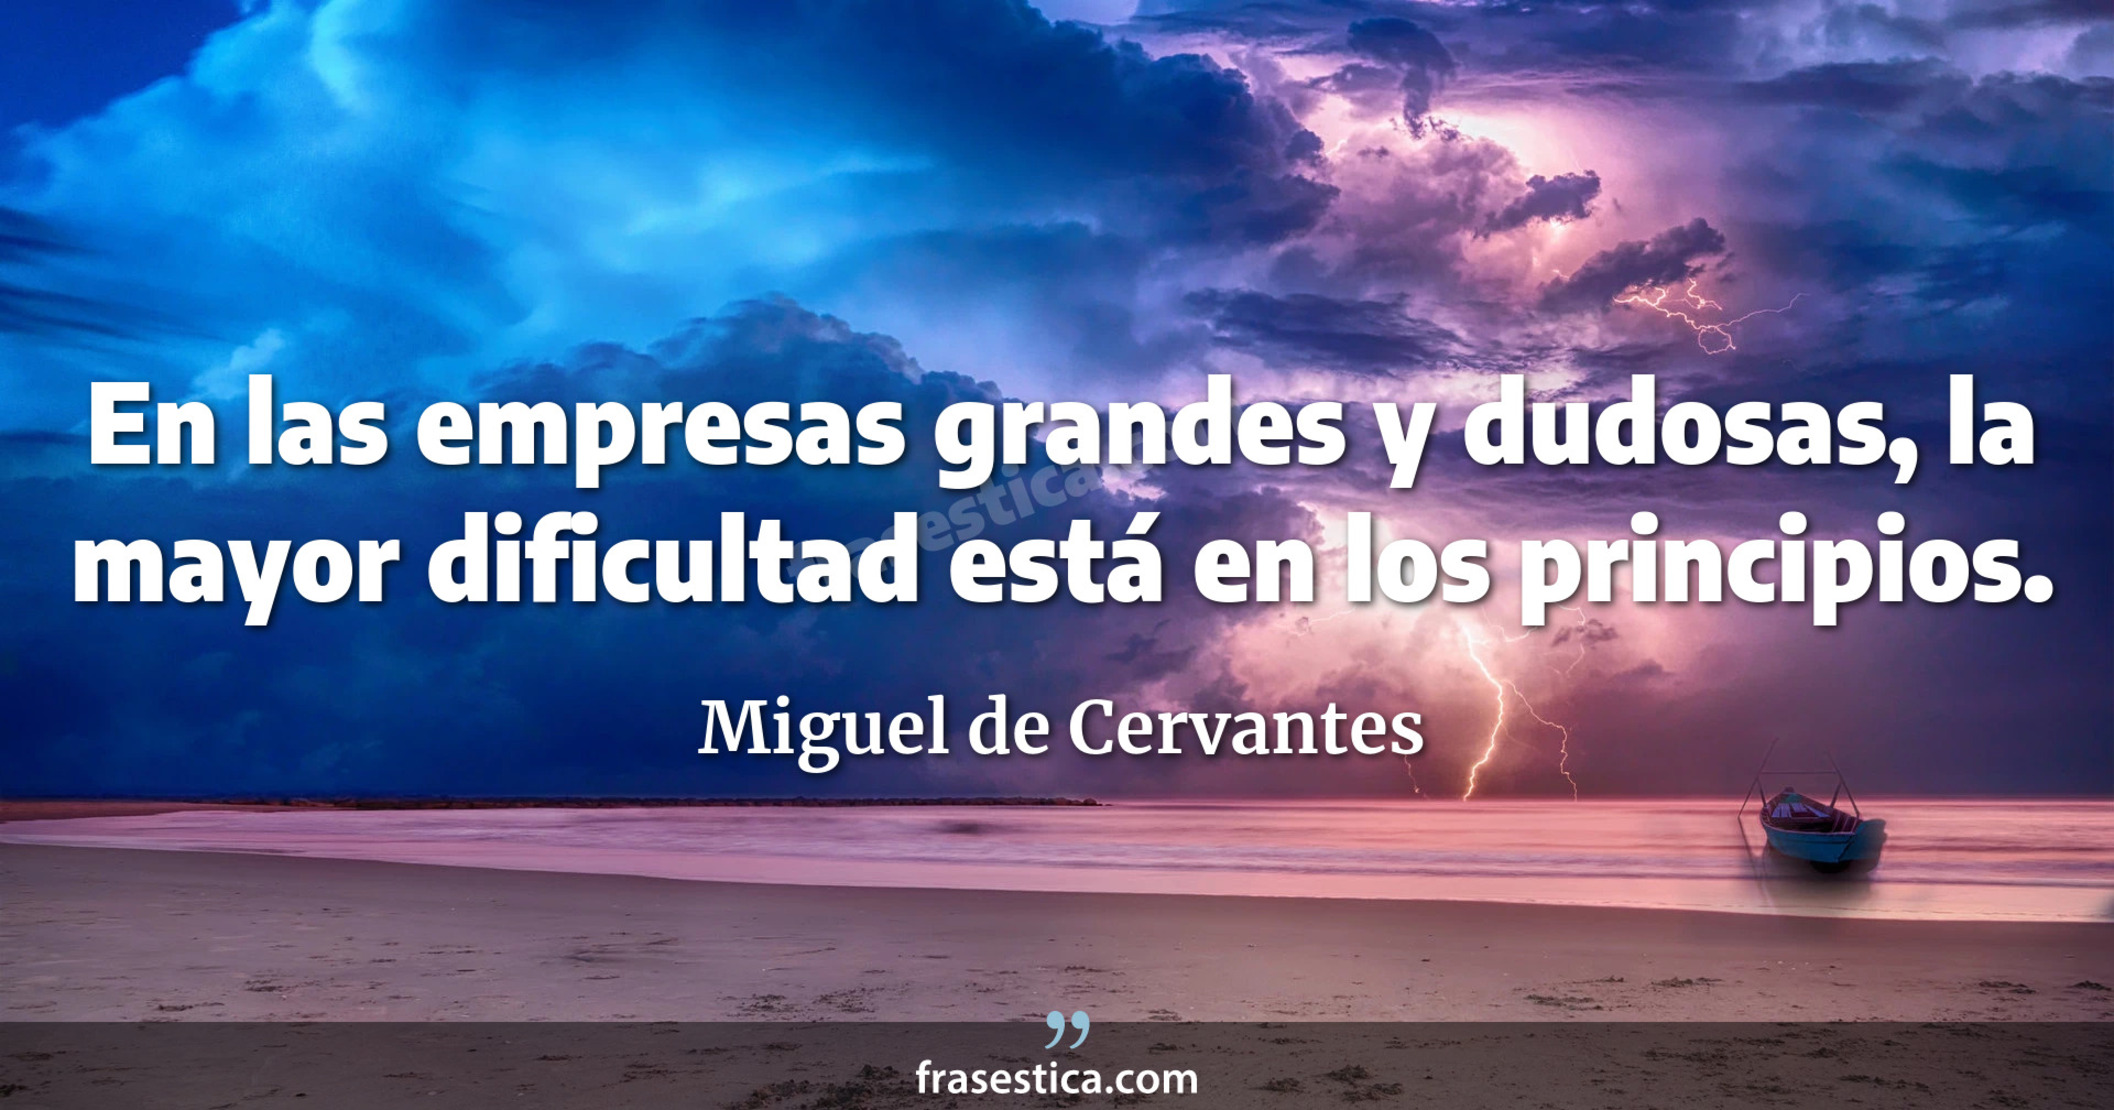 En las empresas grandes y dudosas, la mayor dificultad está en los principios. - Miguel de Cervantes